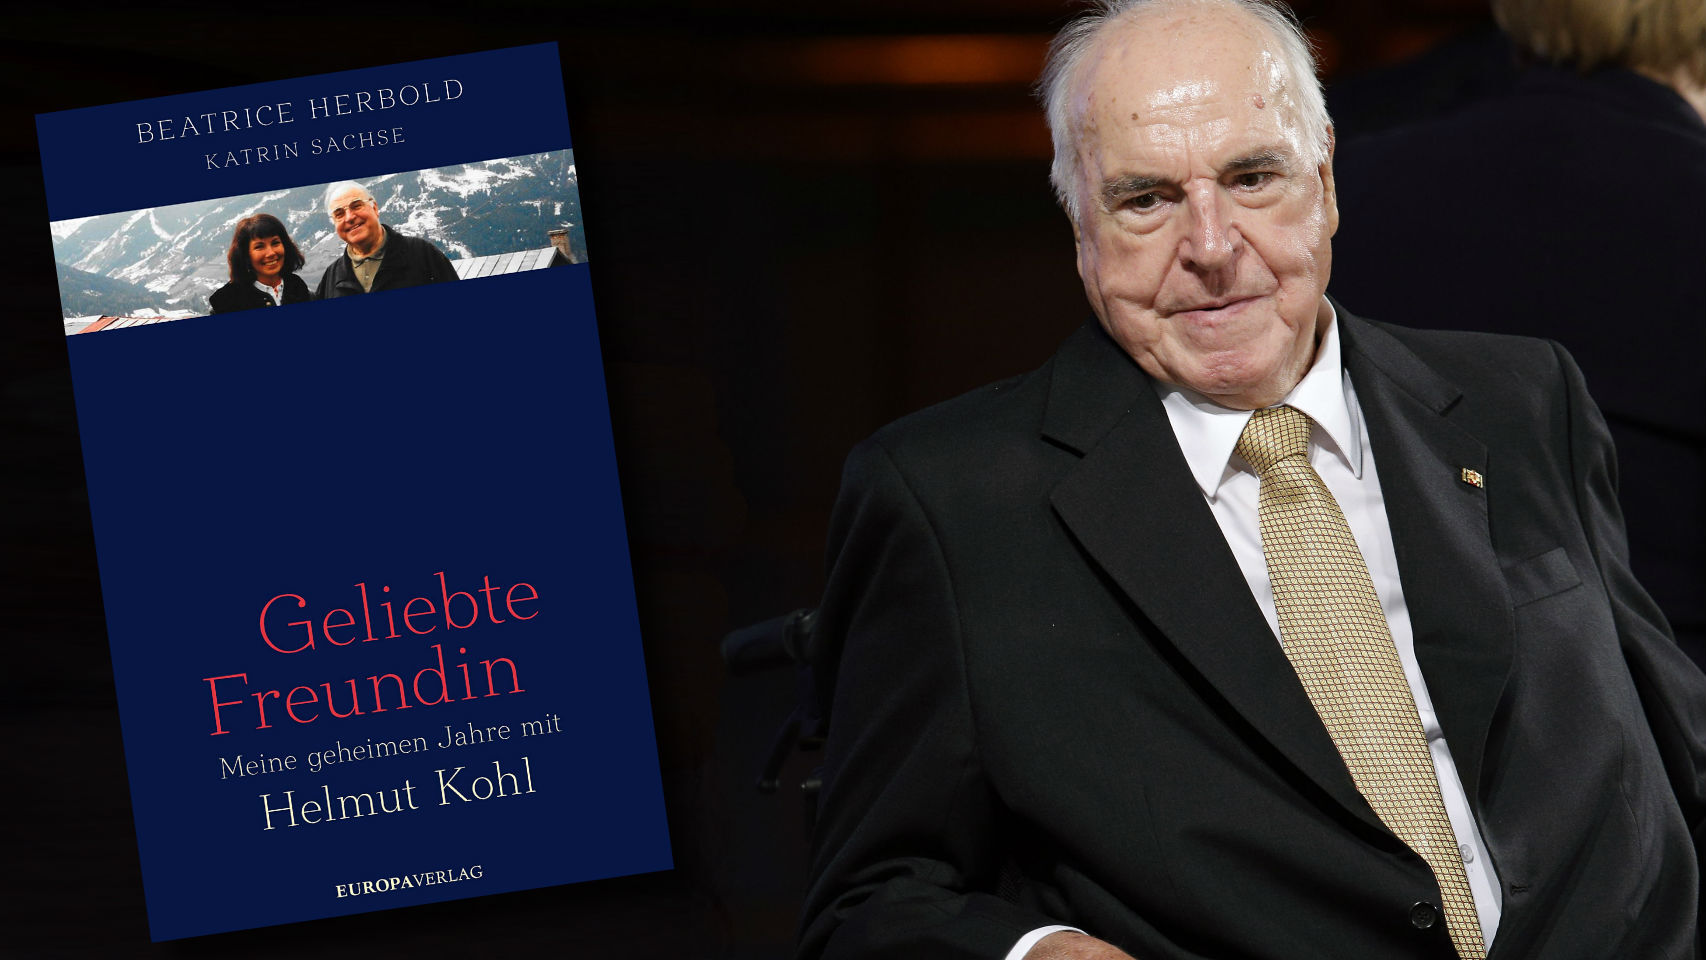 Helmut Kohl y la portada del libro de Beatrice Herbold.